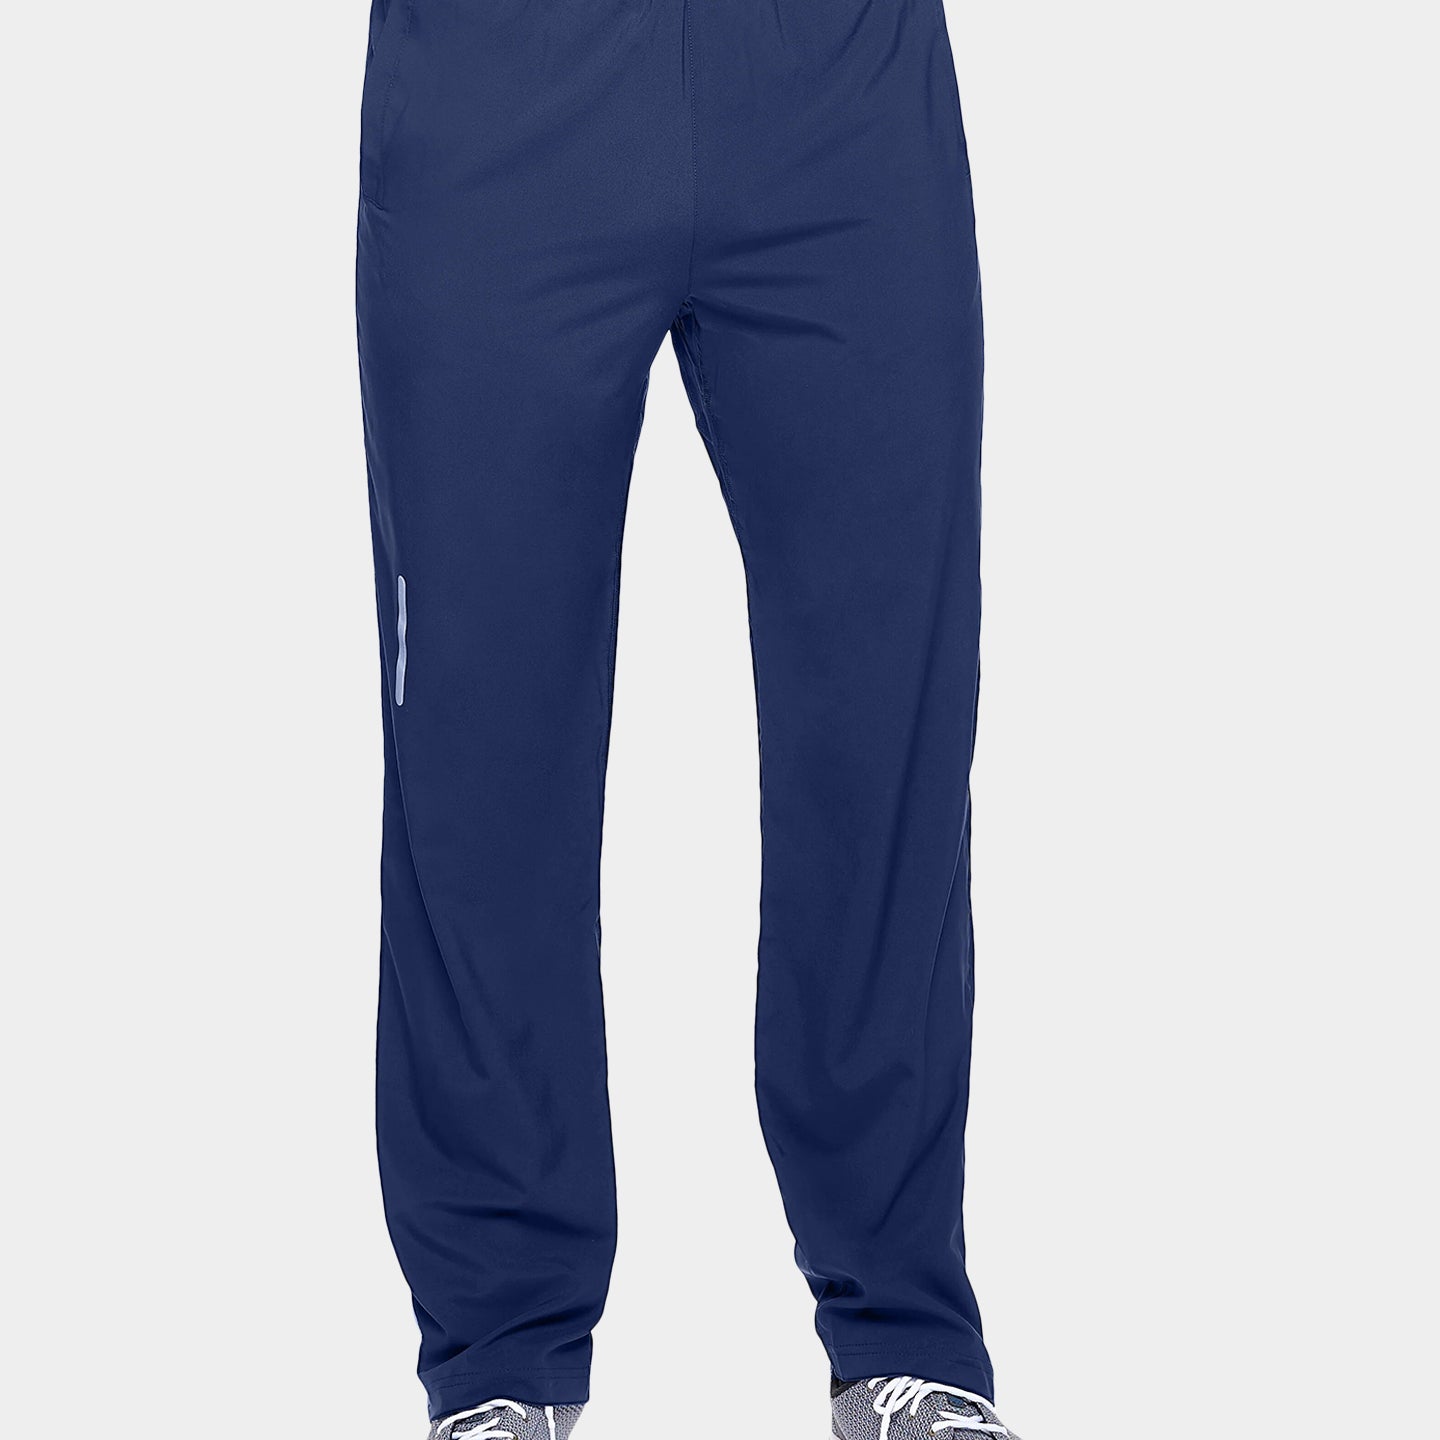 Expert Brand Men's Peformance City Pants, 3XL, Navy A1